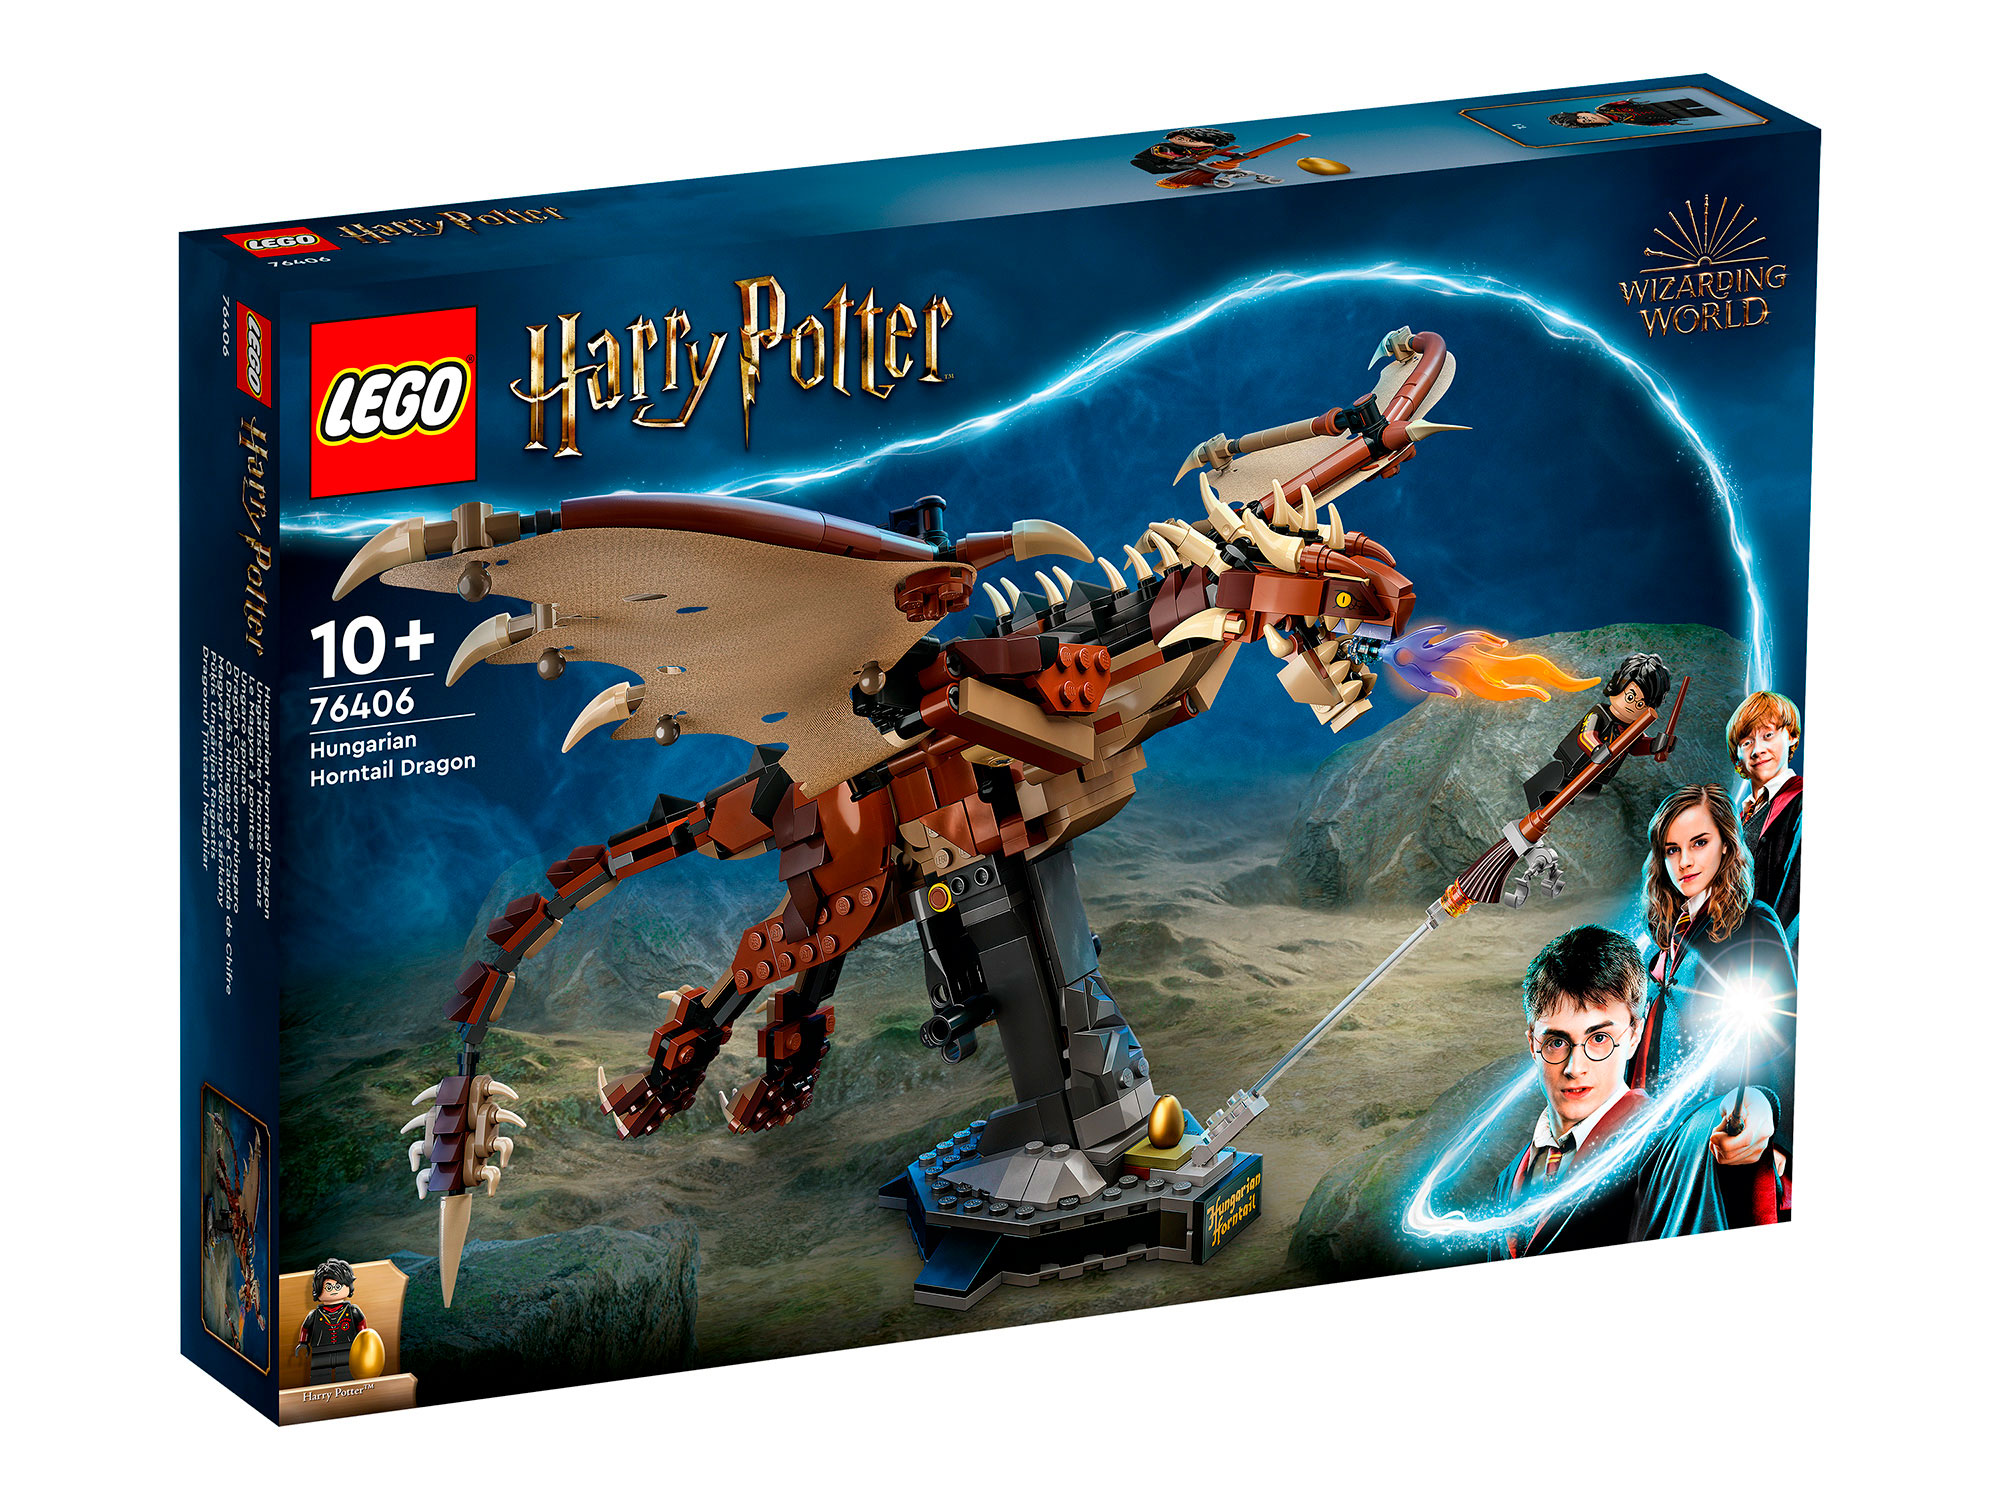 Конструктор LEGO 76406 Harry Potter Венгерская хвосторога, 671 деталь конструктор lego harry potter патронус 754 детали 76414